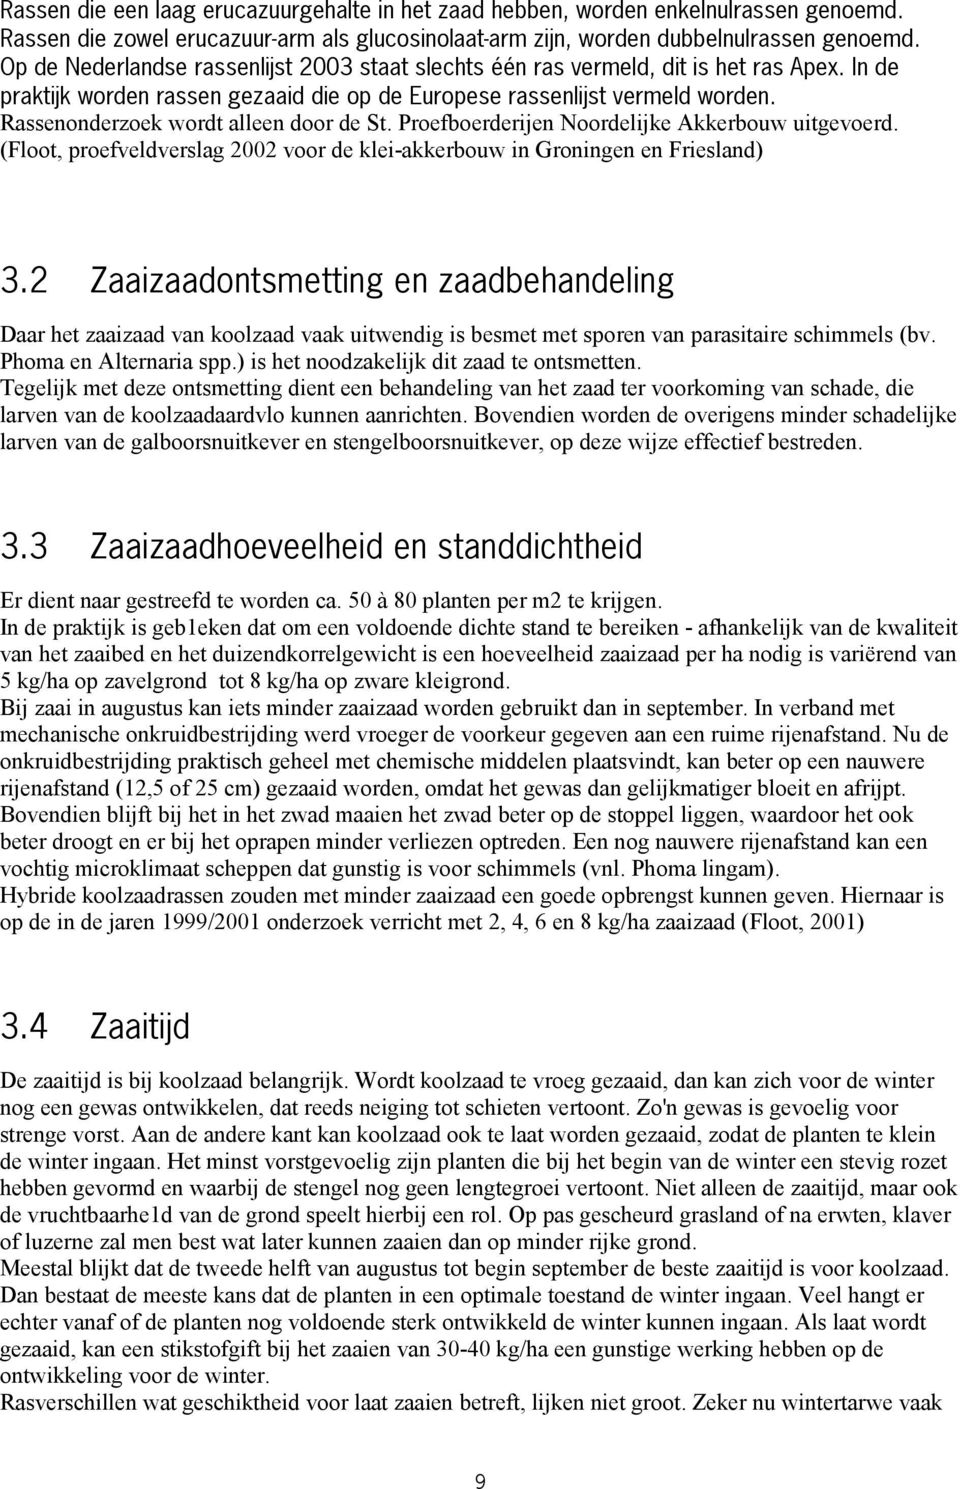 Rassenonderzoek wordt alleen door de St. Proefboerderijen Noordelijke Akkerbouw uitgevoerd. (Floot, proefveldverslag 2002 voor de klei-akkerbouw in Groningen en Friesland) 3.